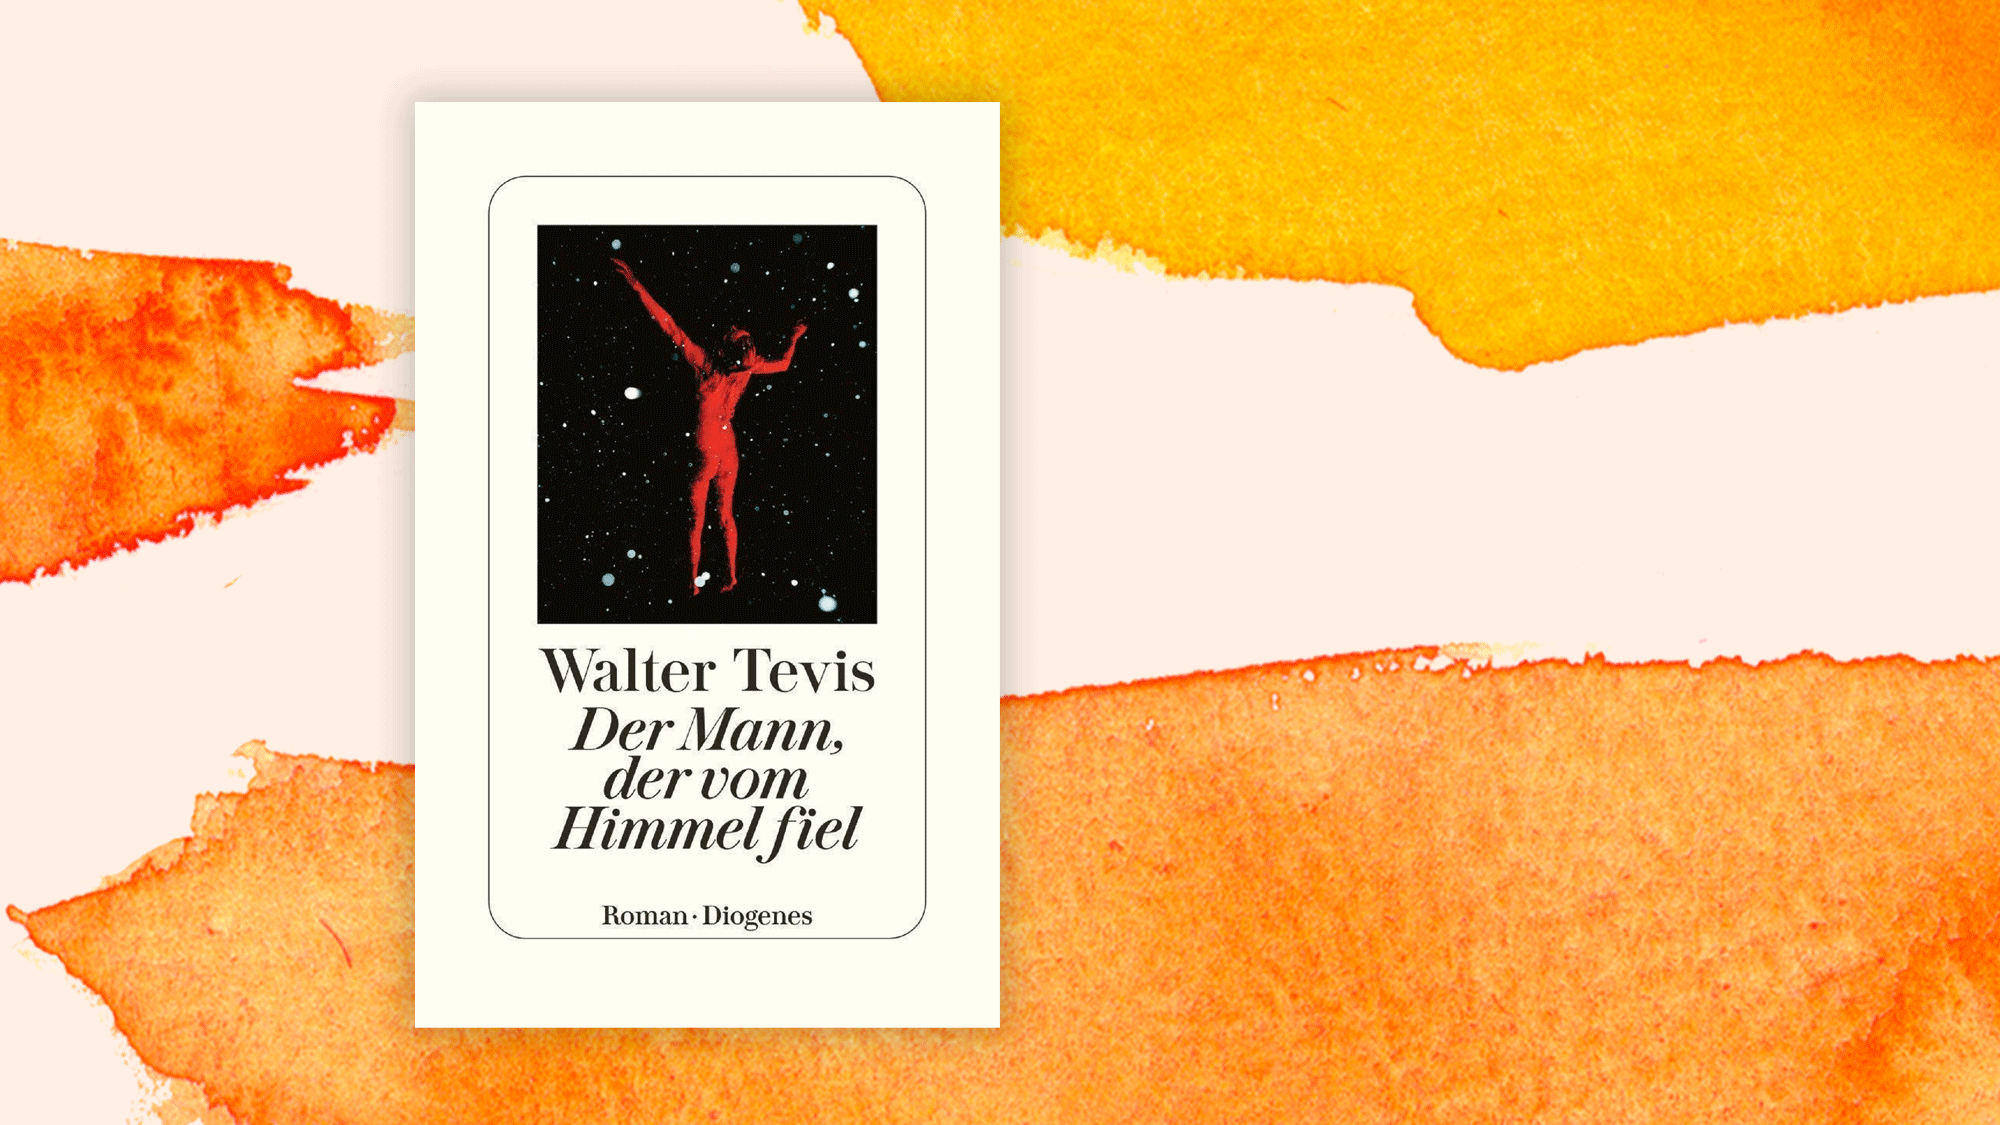 Walter Tevis: "Der Mann, der vom Himmel fiel" Wir sind die Aliens